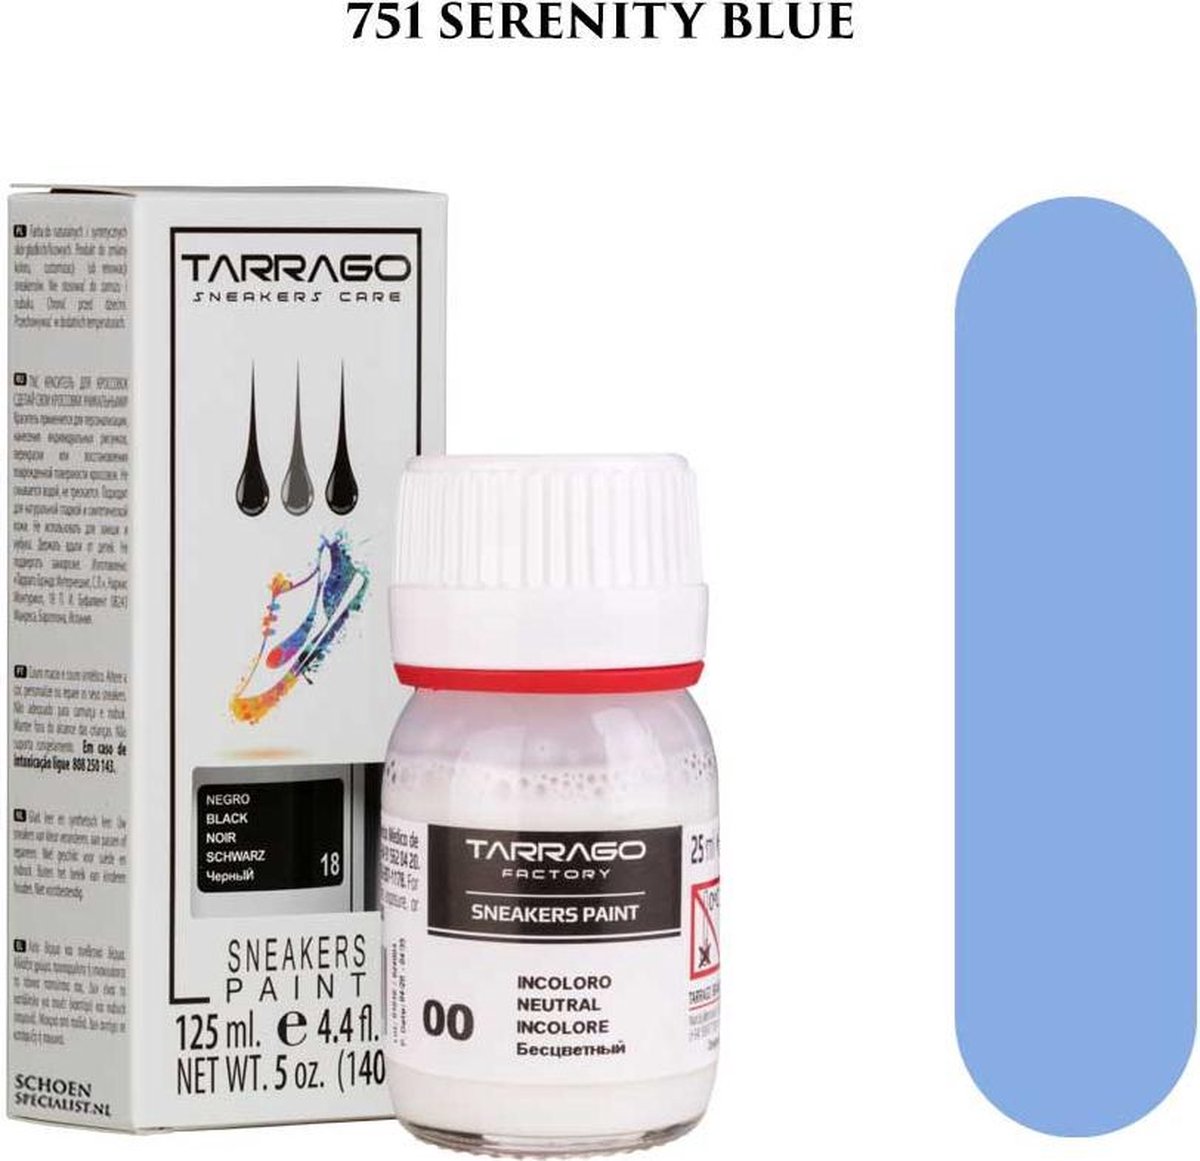 Tarrago Sneakers Paint 25ml - 751 Serenity blue